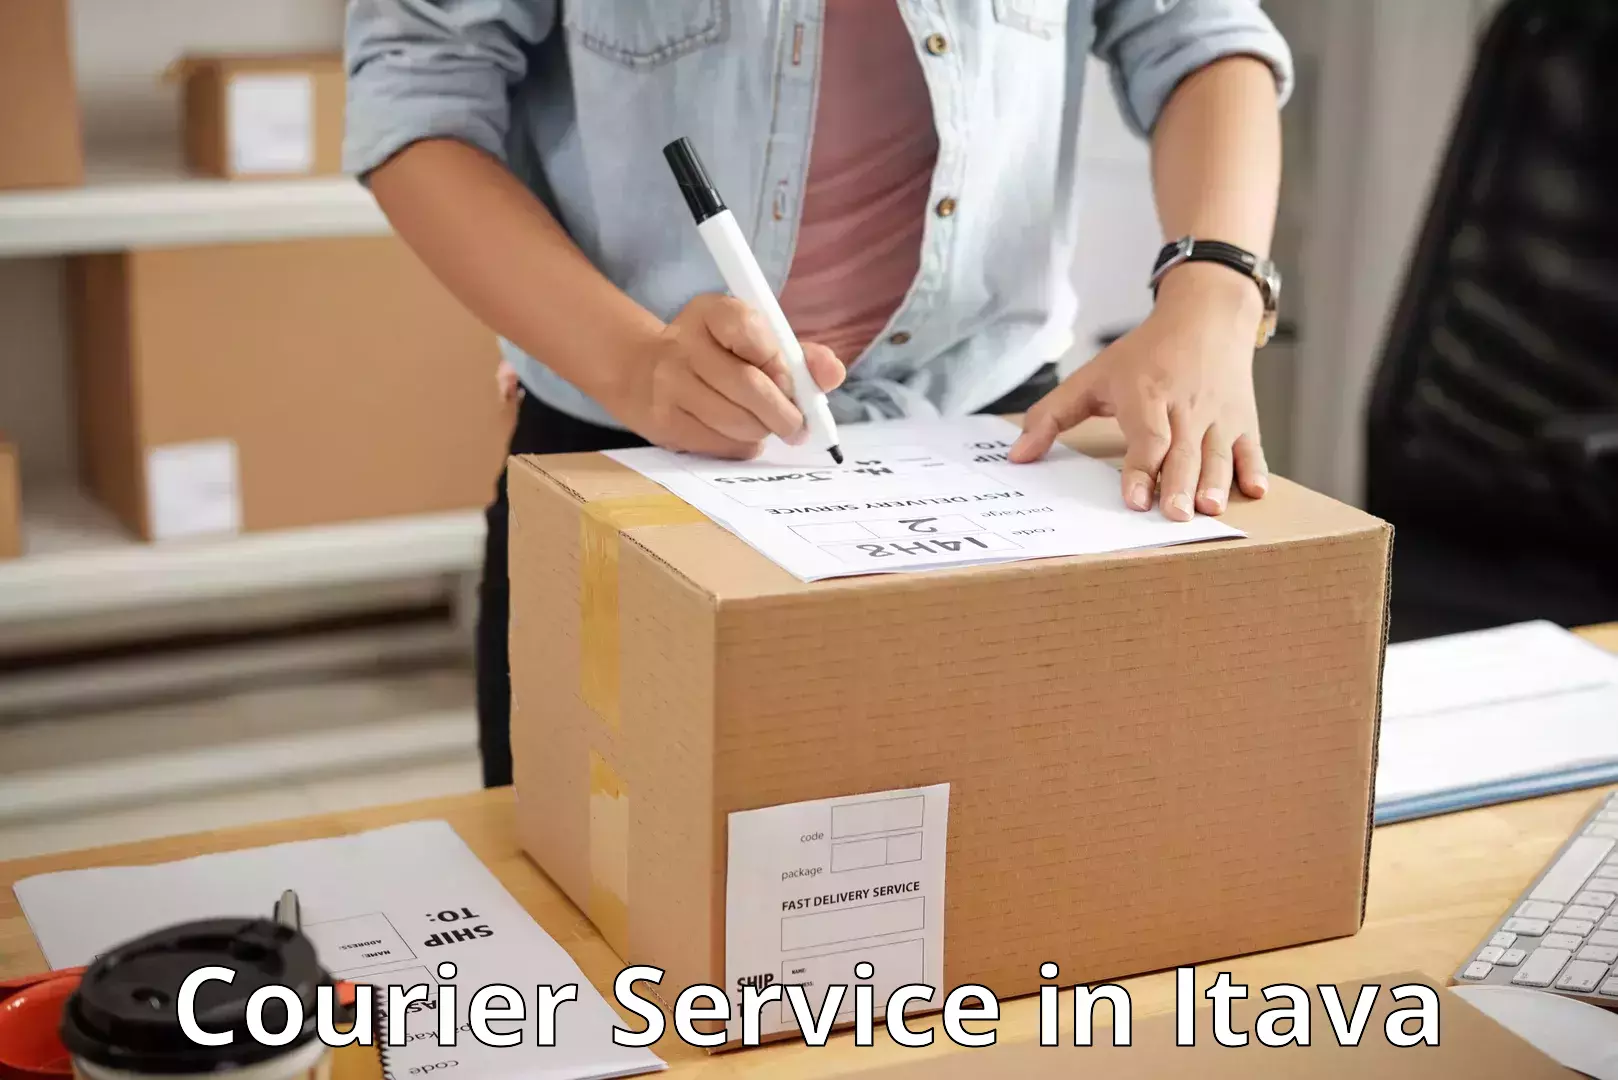 Efficient parcel transport in Itava